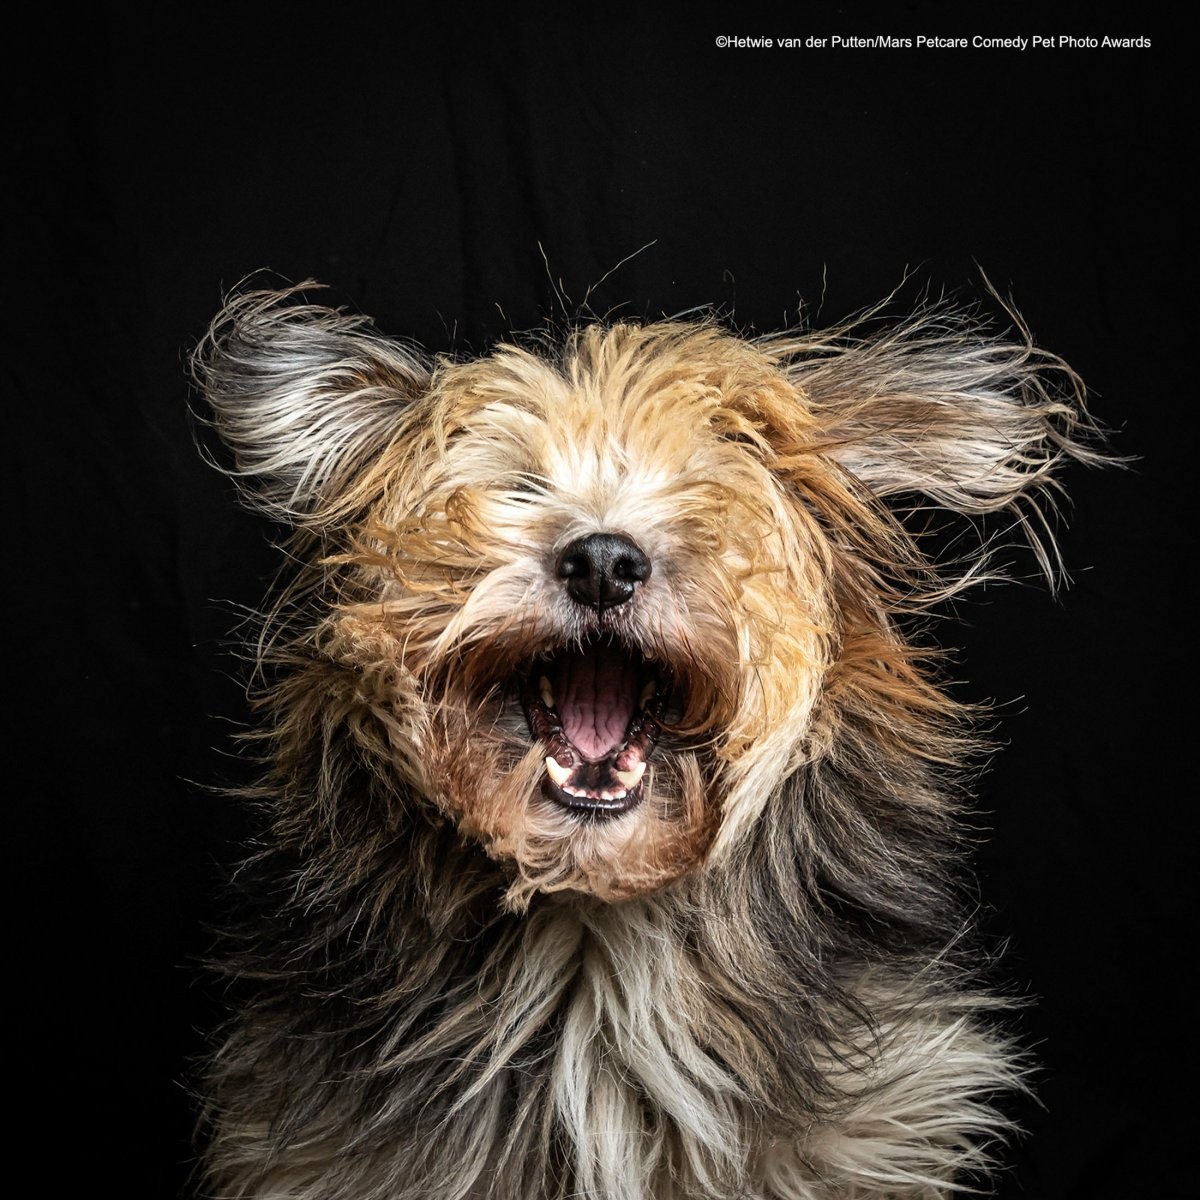 Finalista do concurso de fotos de pets mais engraçadas de 2020 (Foto: Divulgação Mars Petcare Comedy Pet Photo Awards)